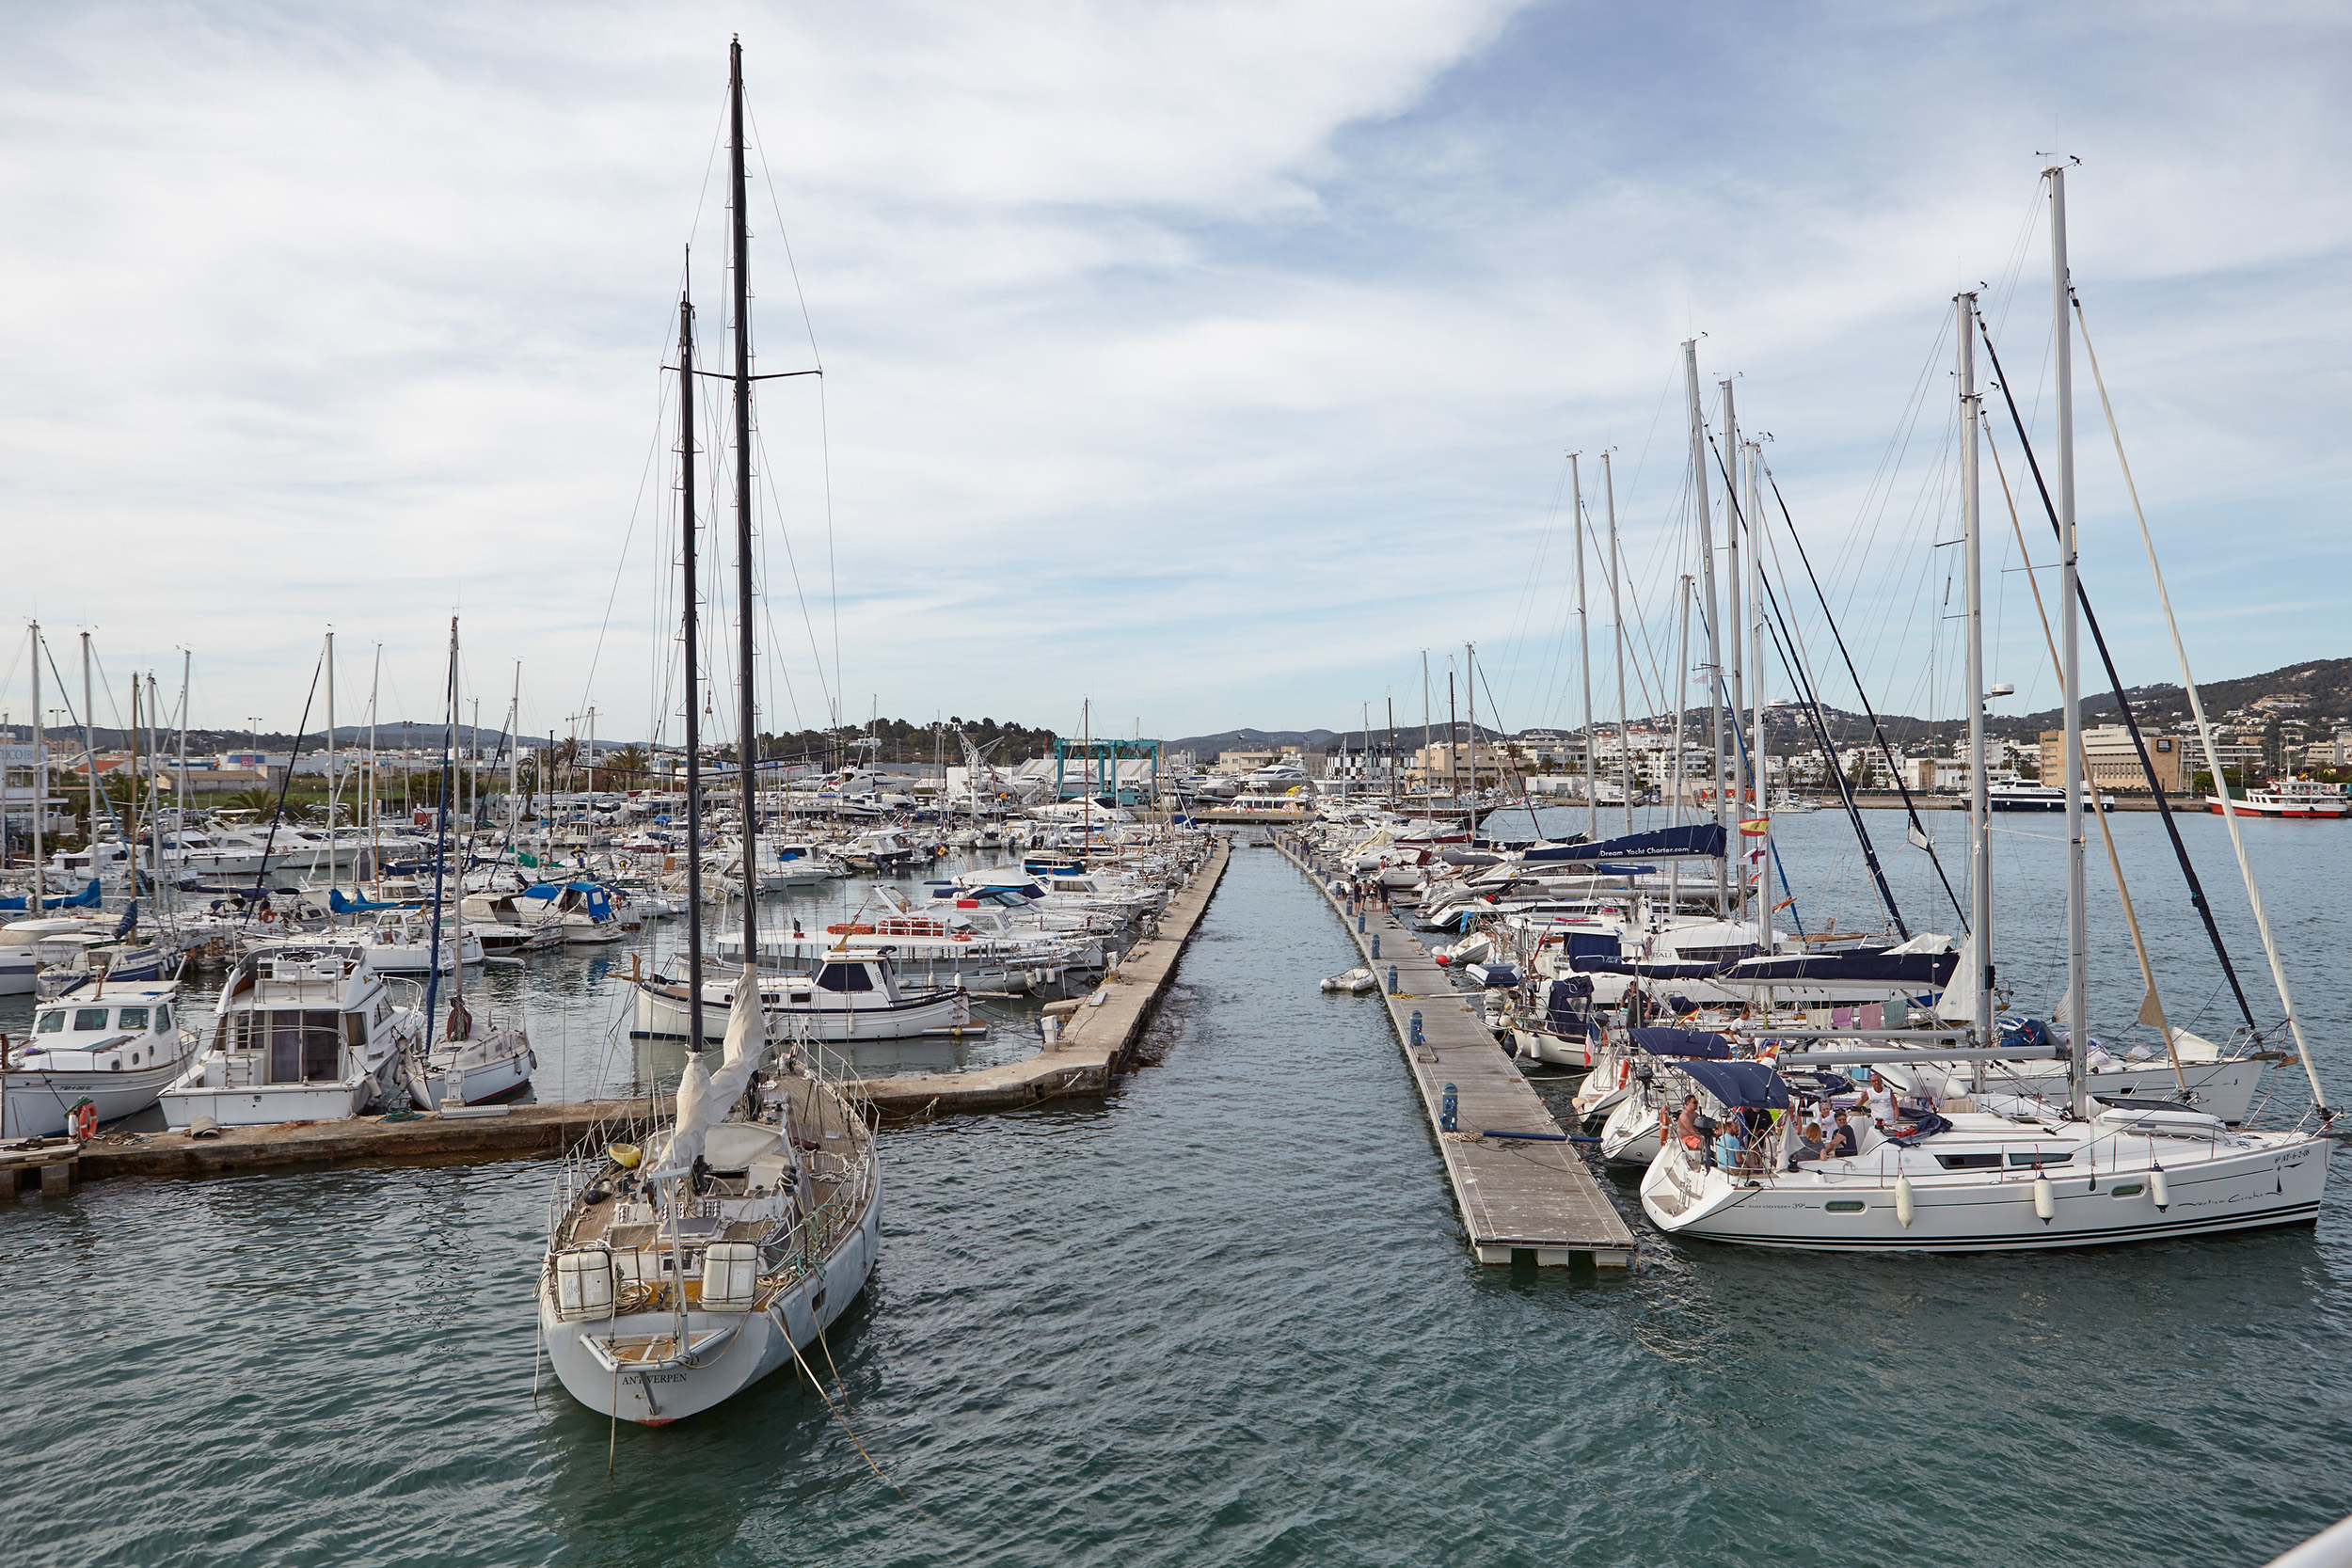 L'oferta del Club Nàutic d'Eivissa escollida proposta de major interès portuari per al port d'Eivissa